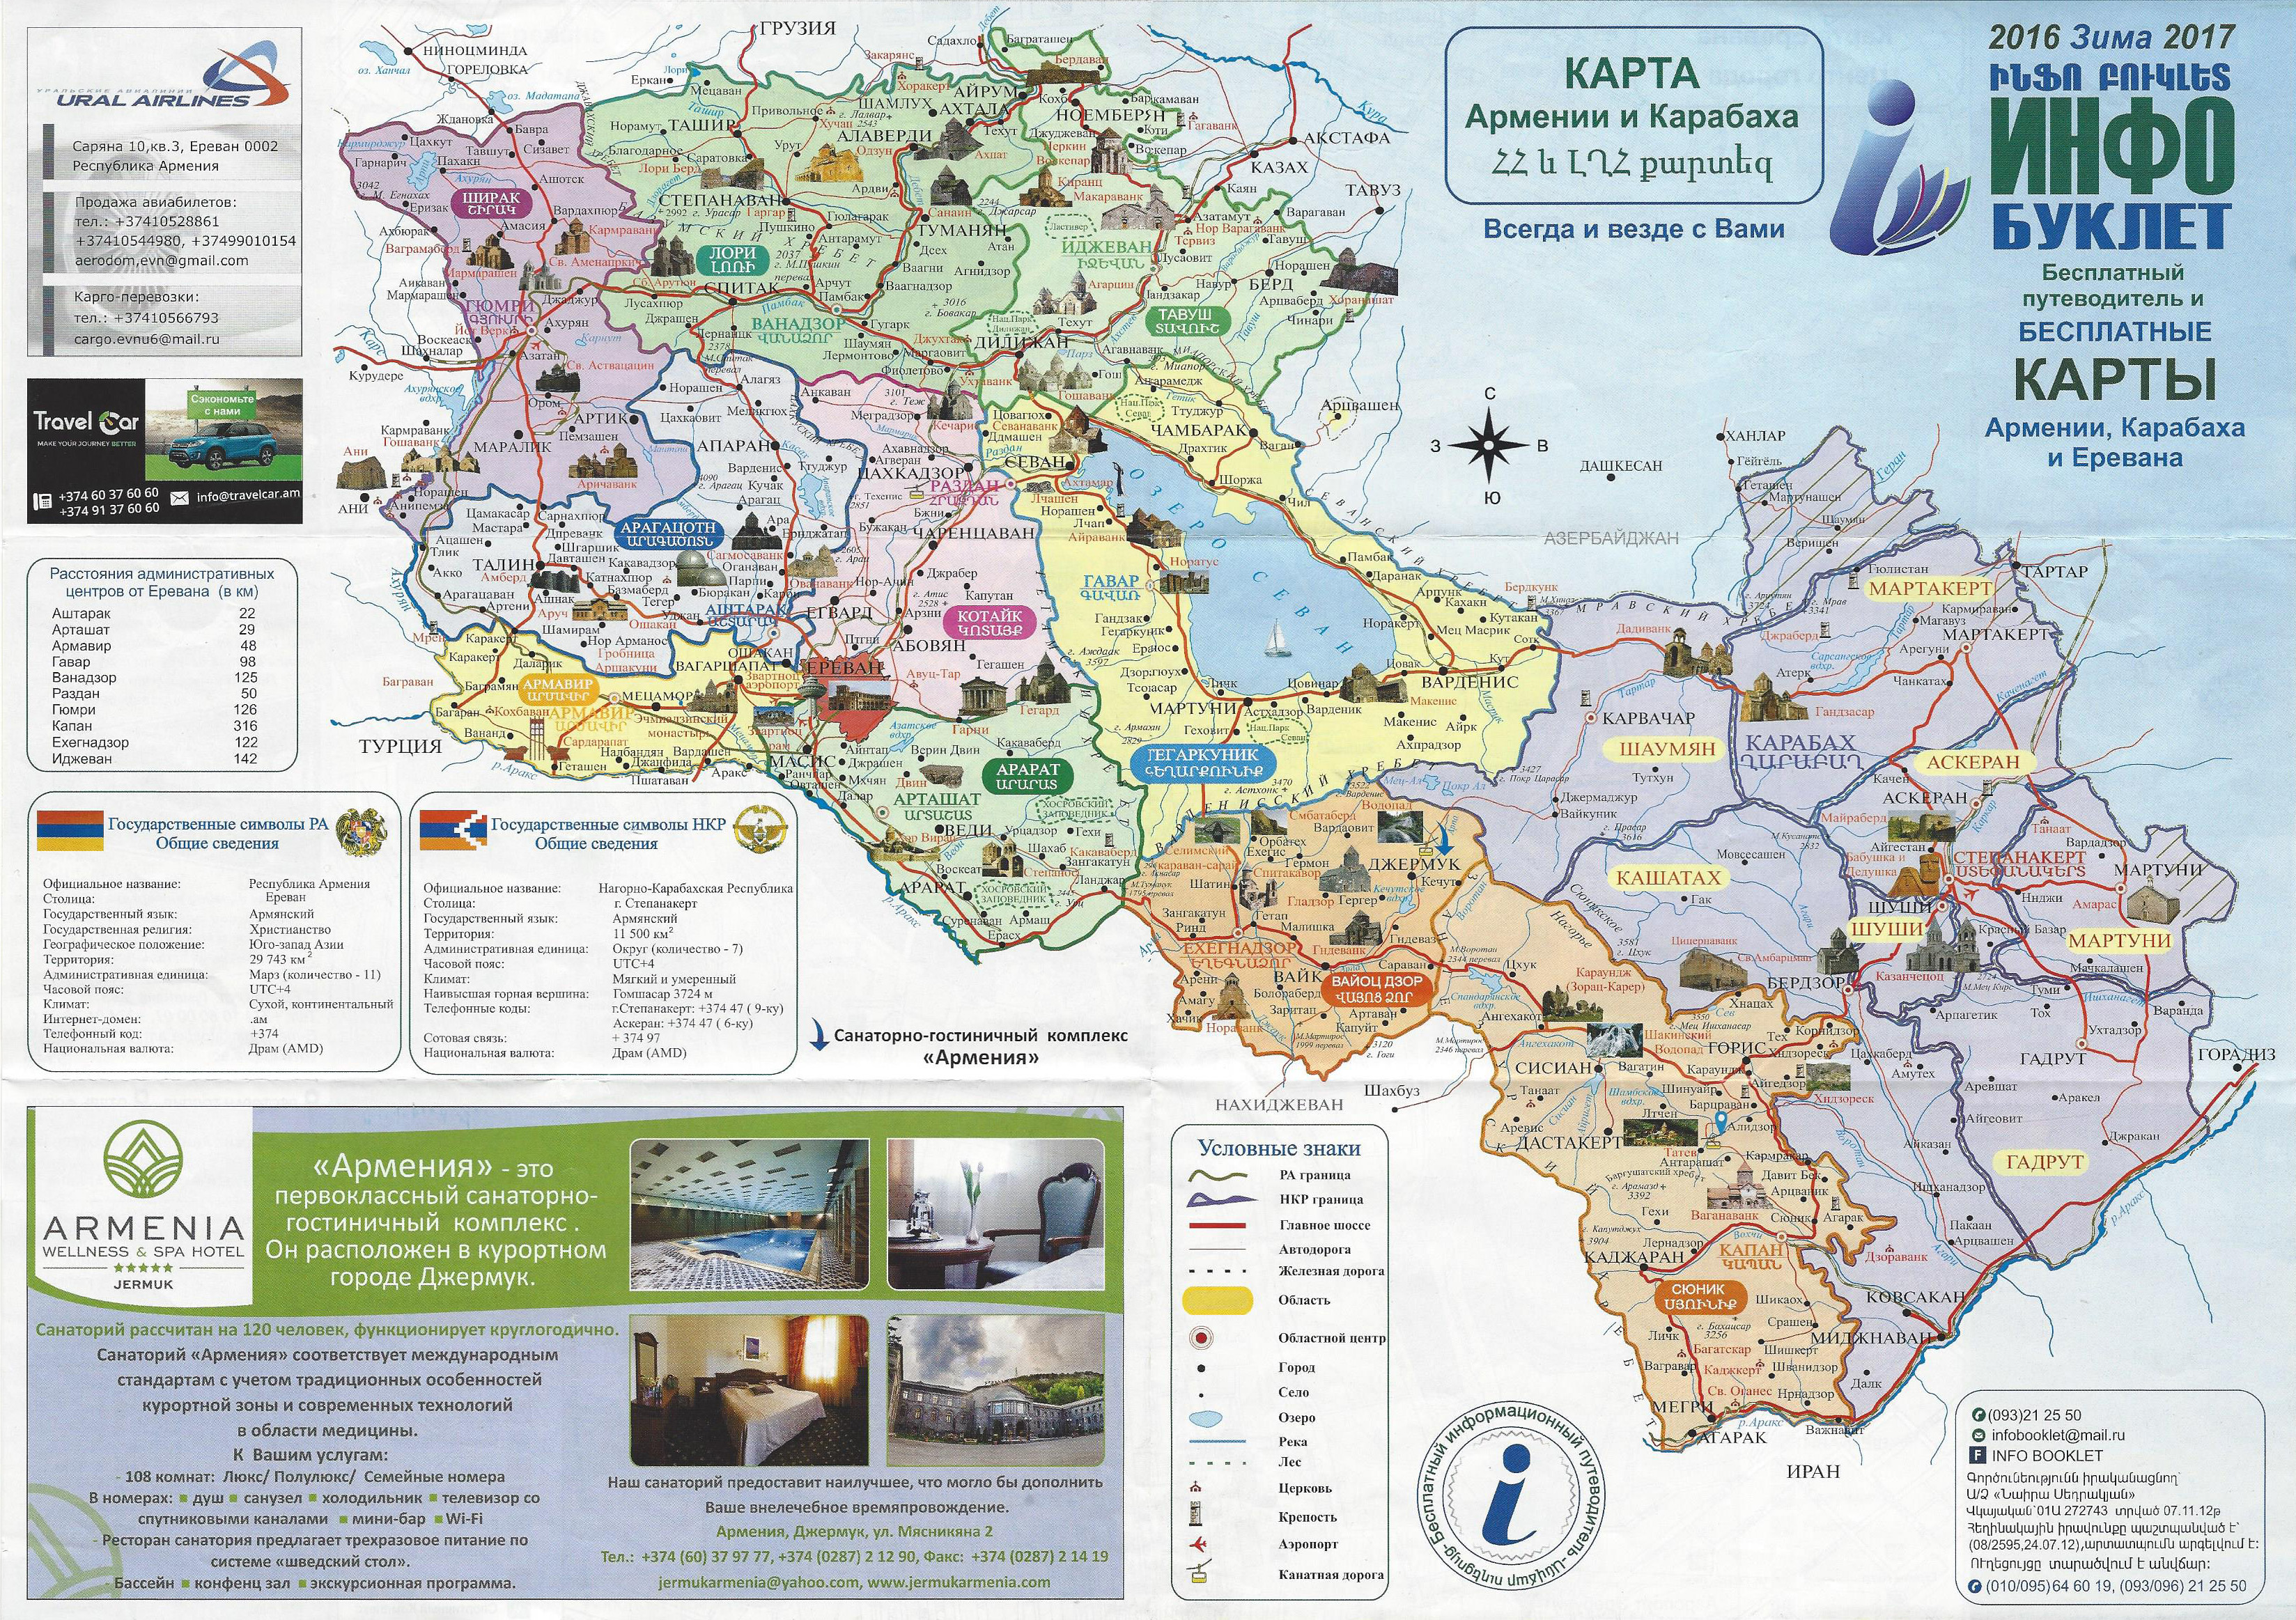 Достопримечательности армении фото с названиями и описанием на карте